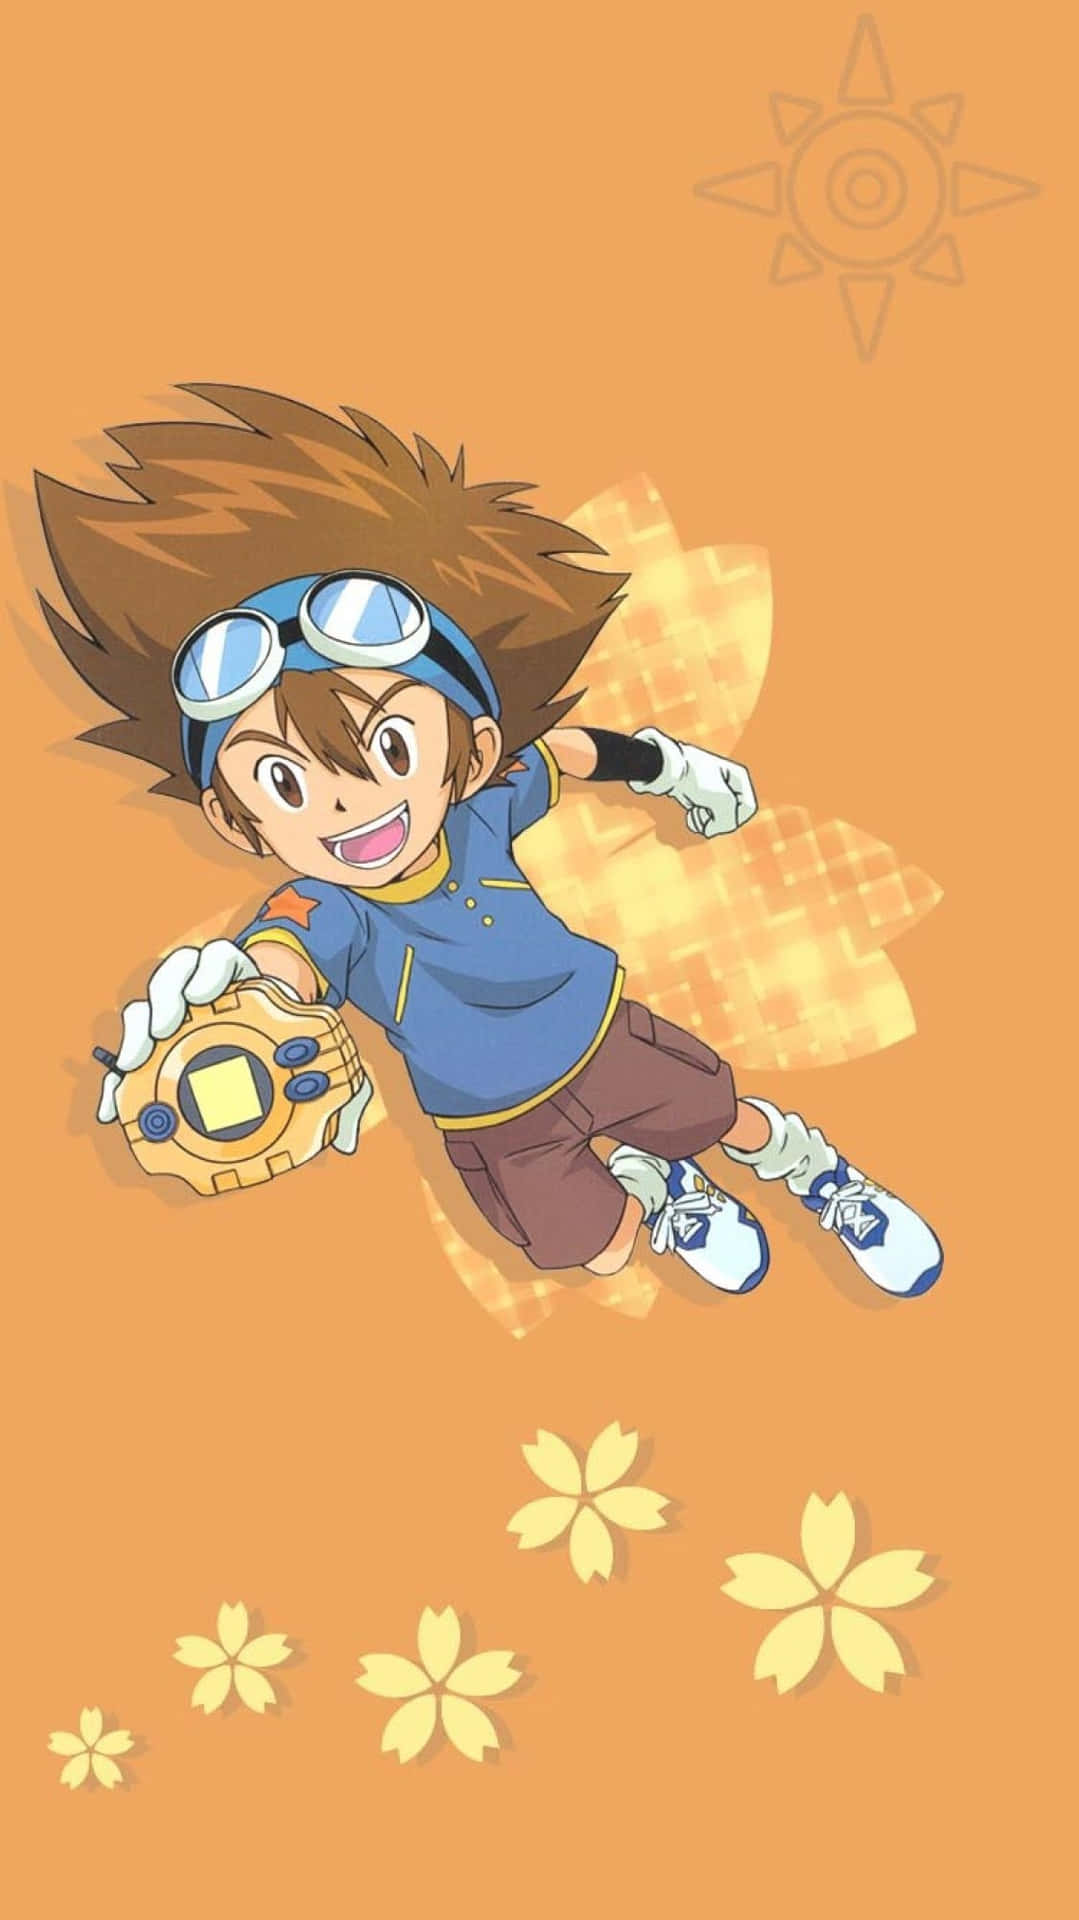 Taichi "tai" Kamiya Leading The Digimon Adventure Wallpaper